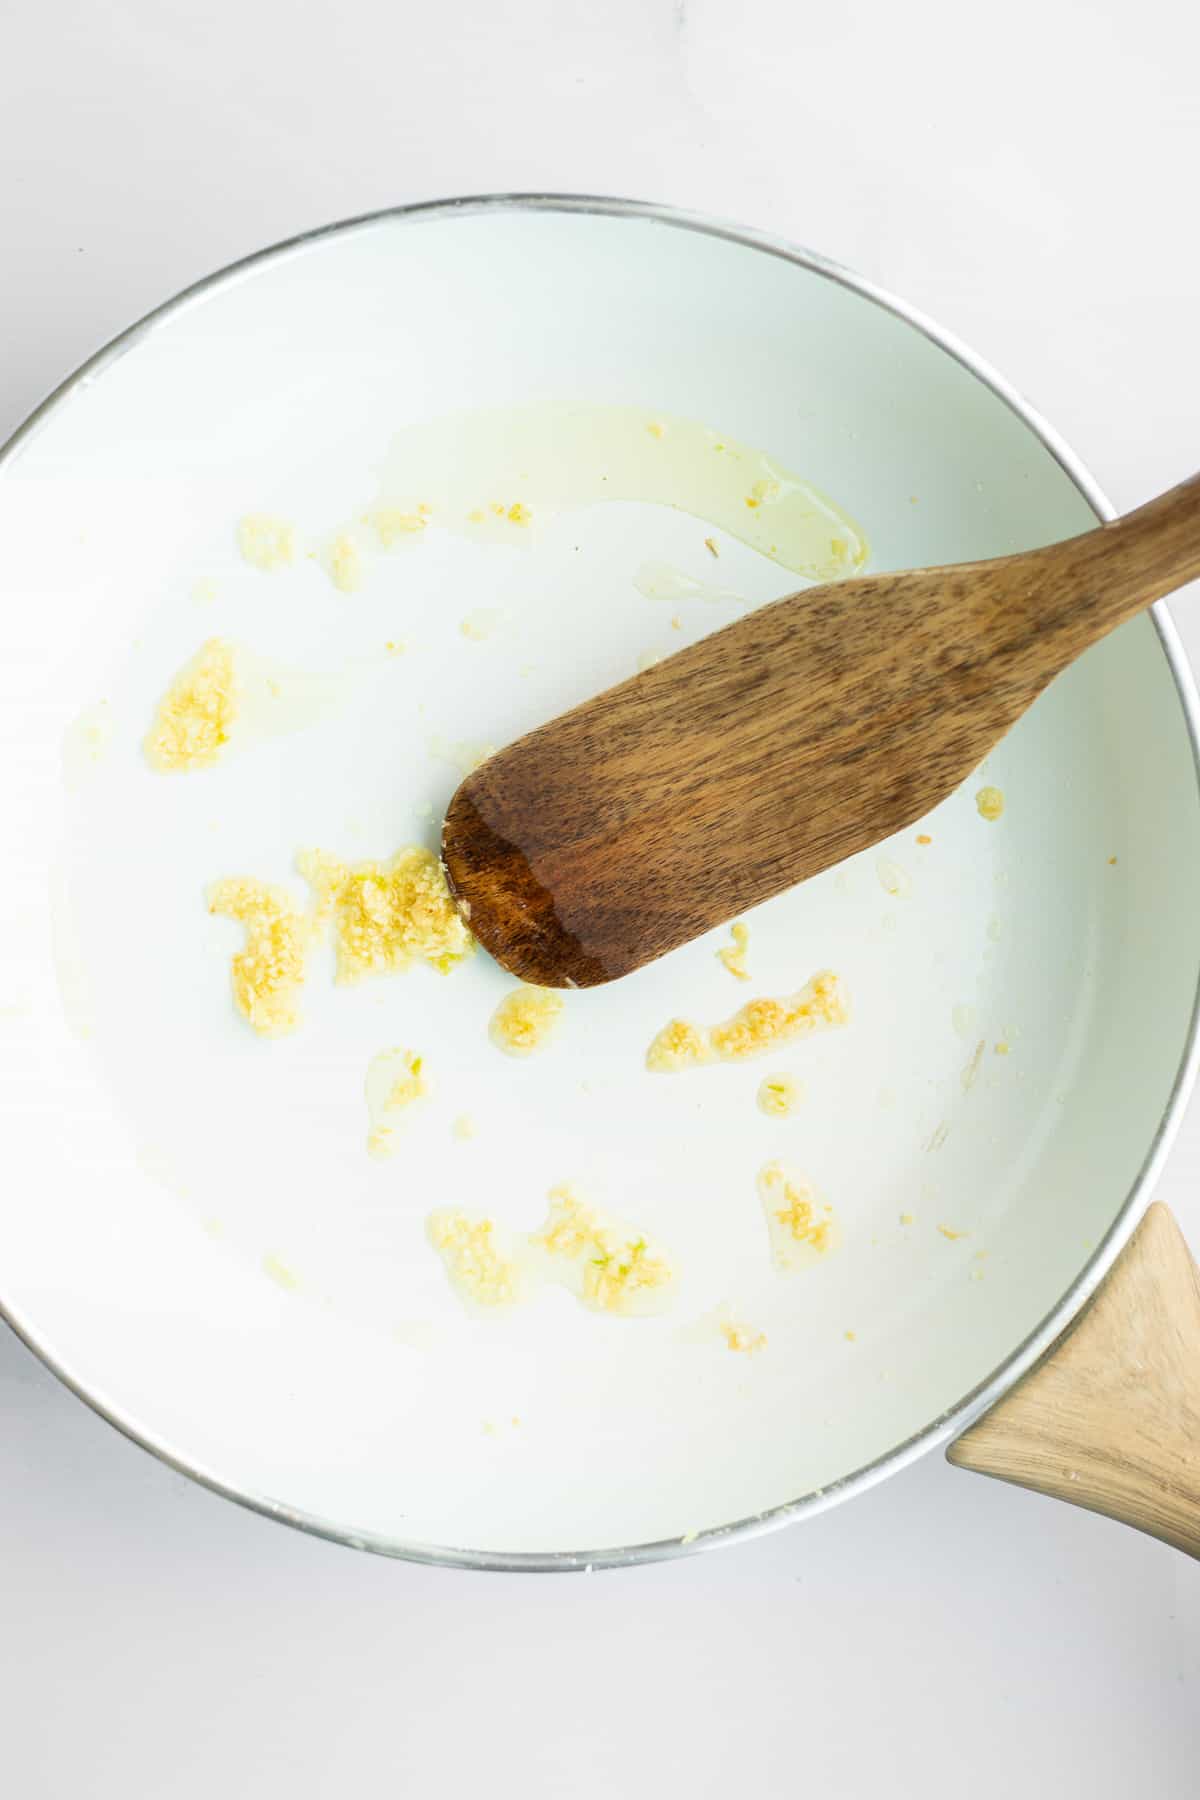 sauteed garlic in white pan.